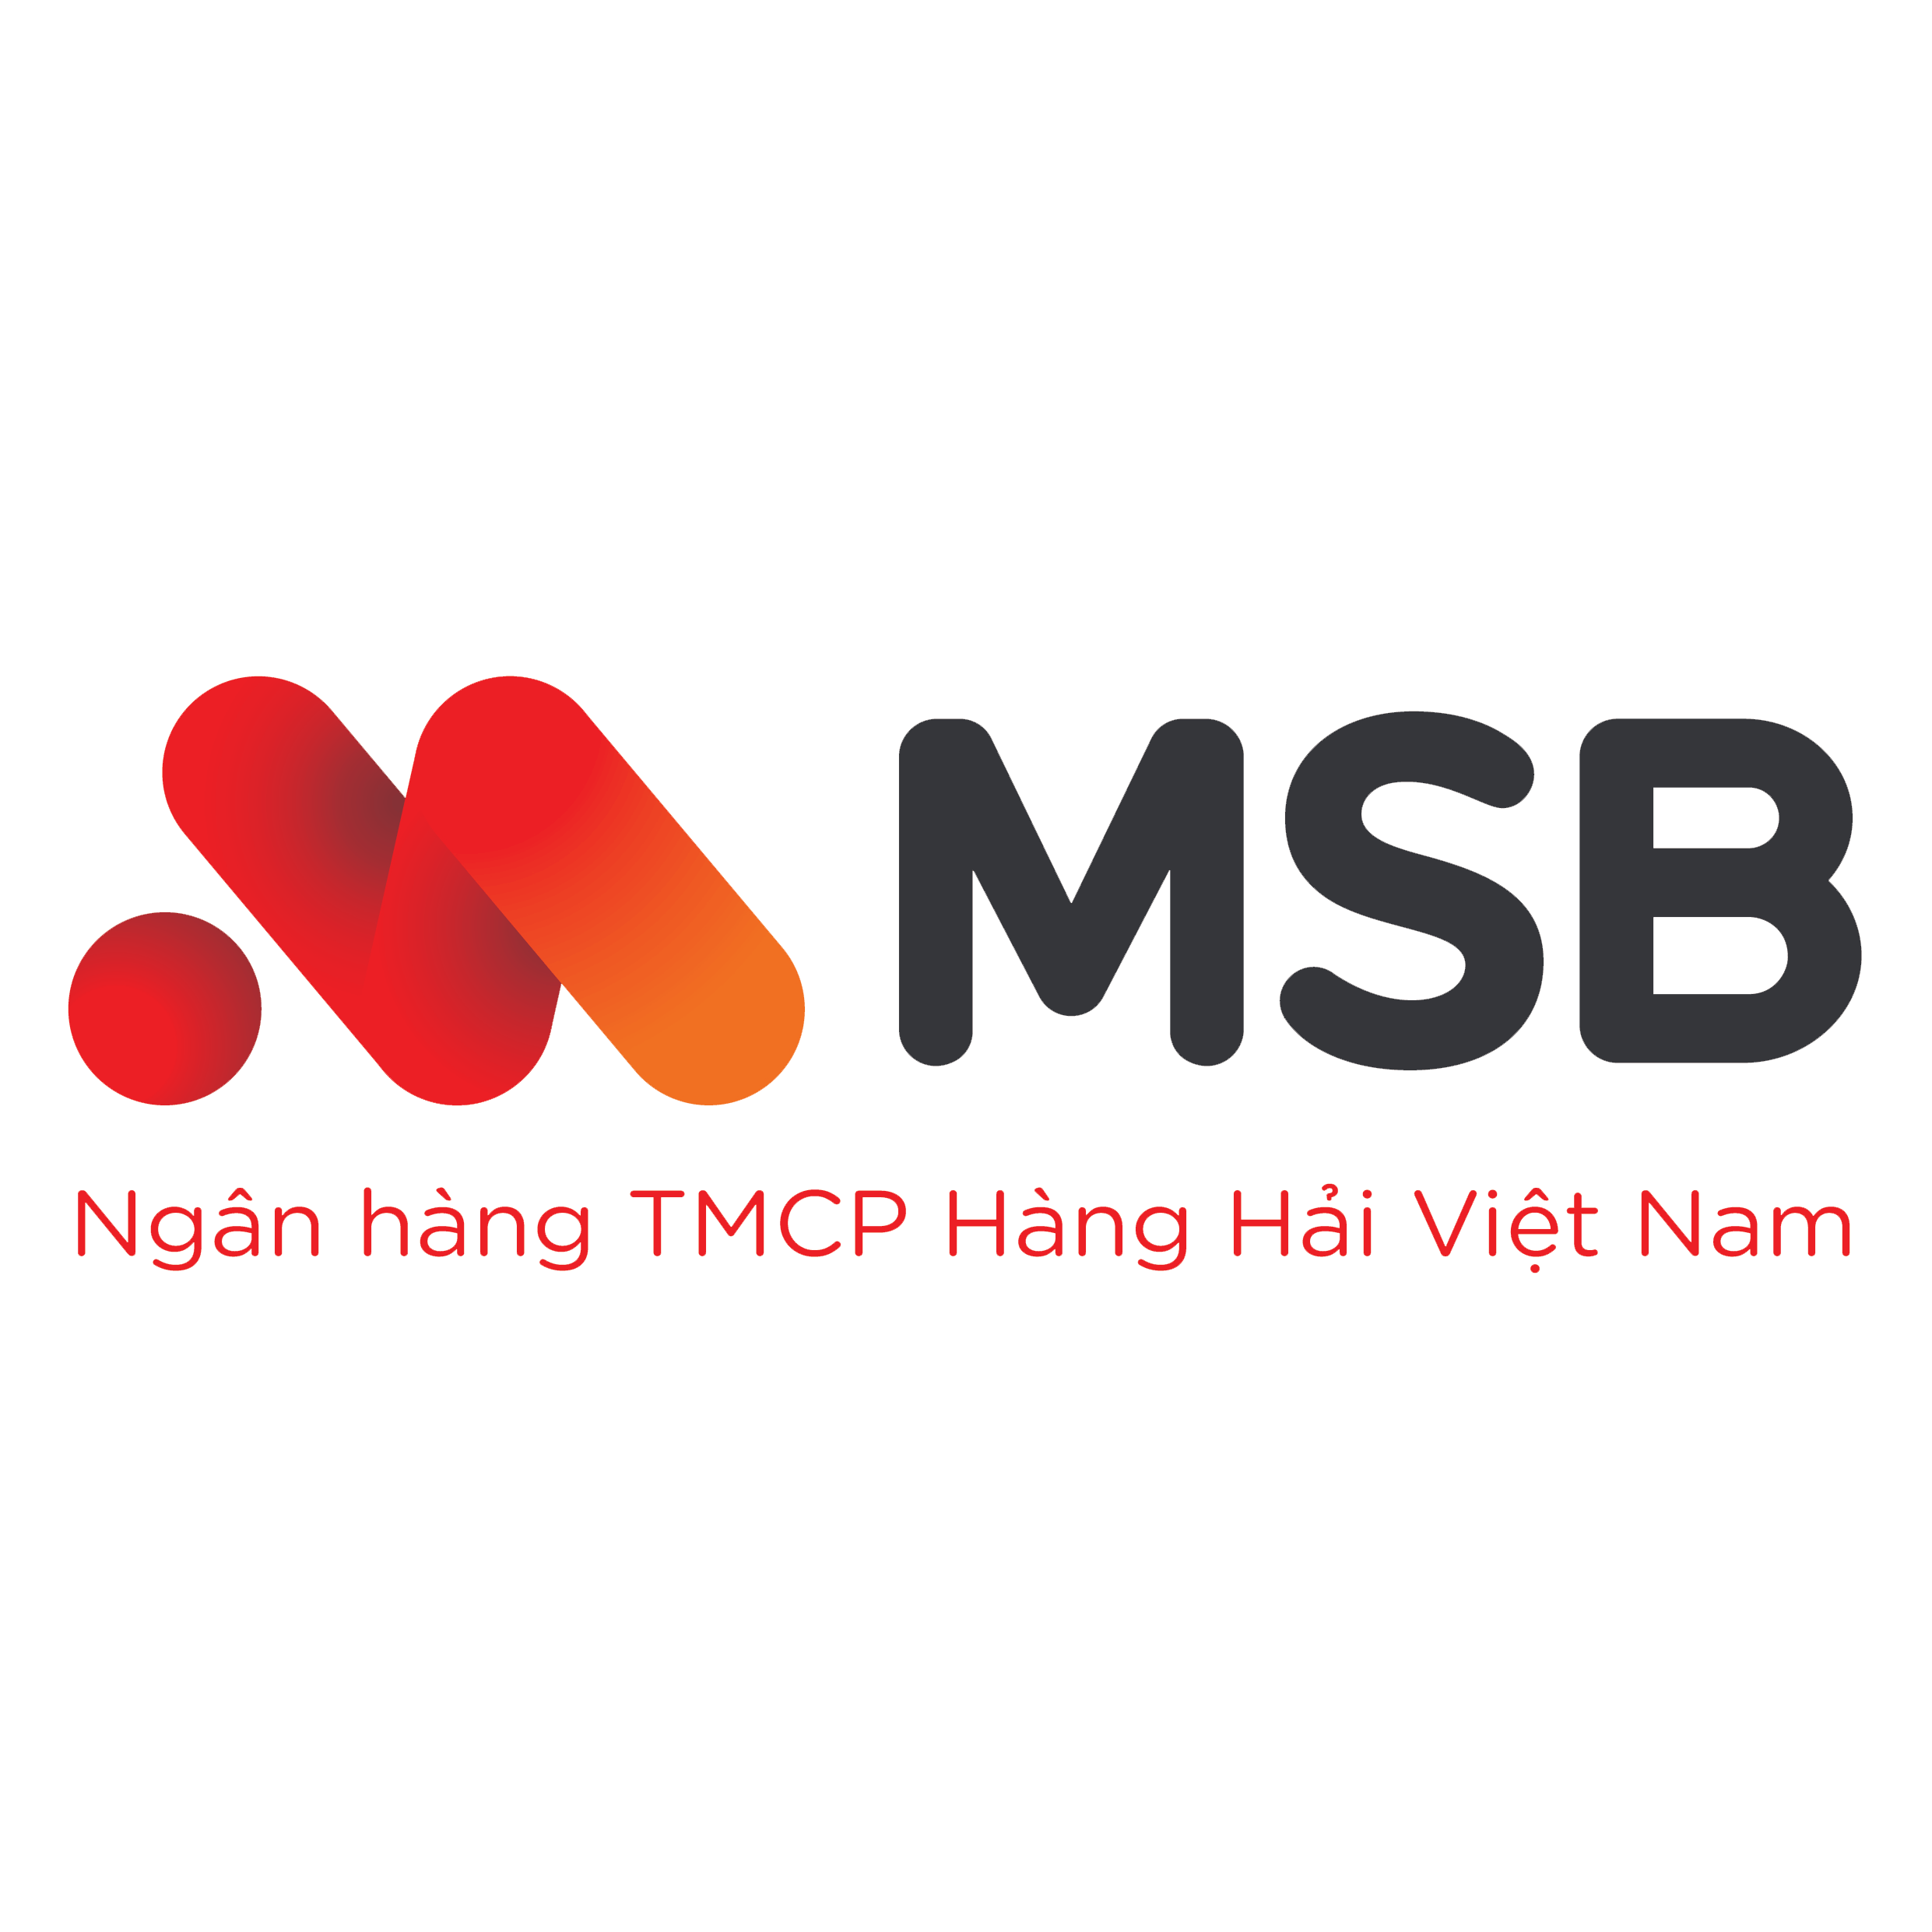 MSB - Khách hàng tổ chức team building cùng Viet Vision